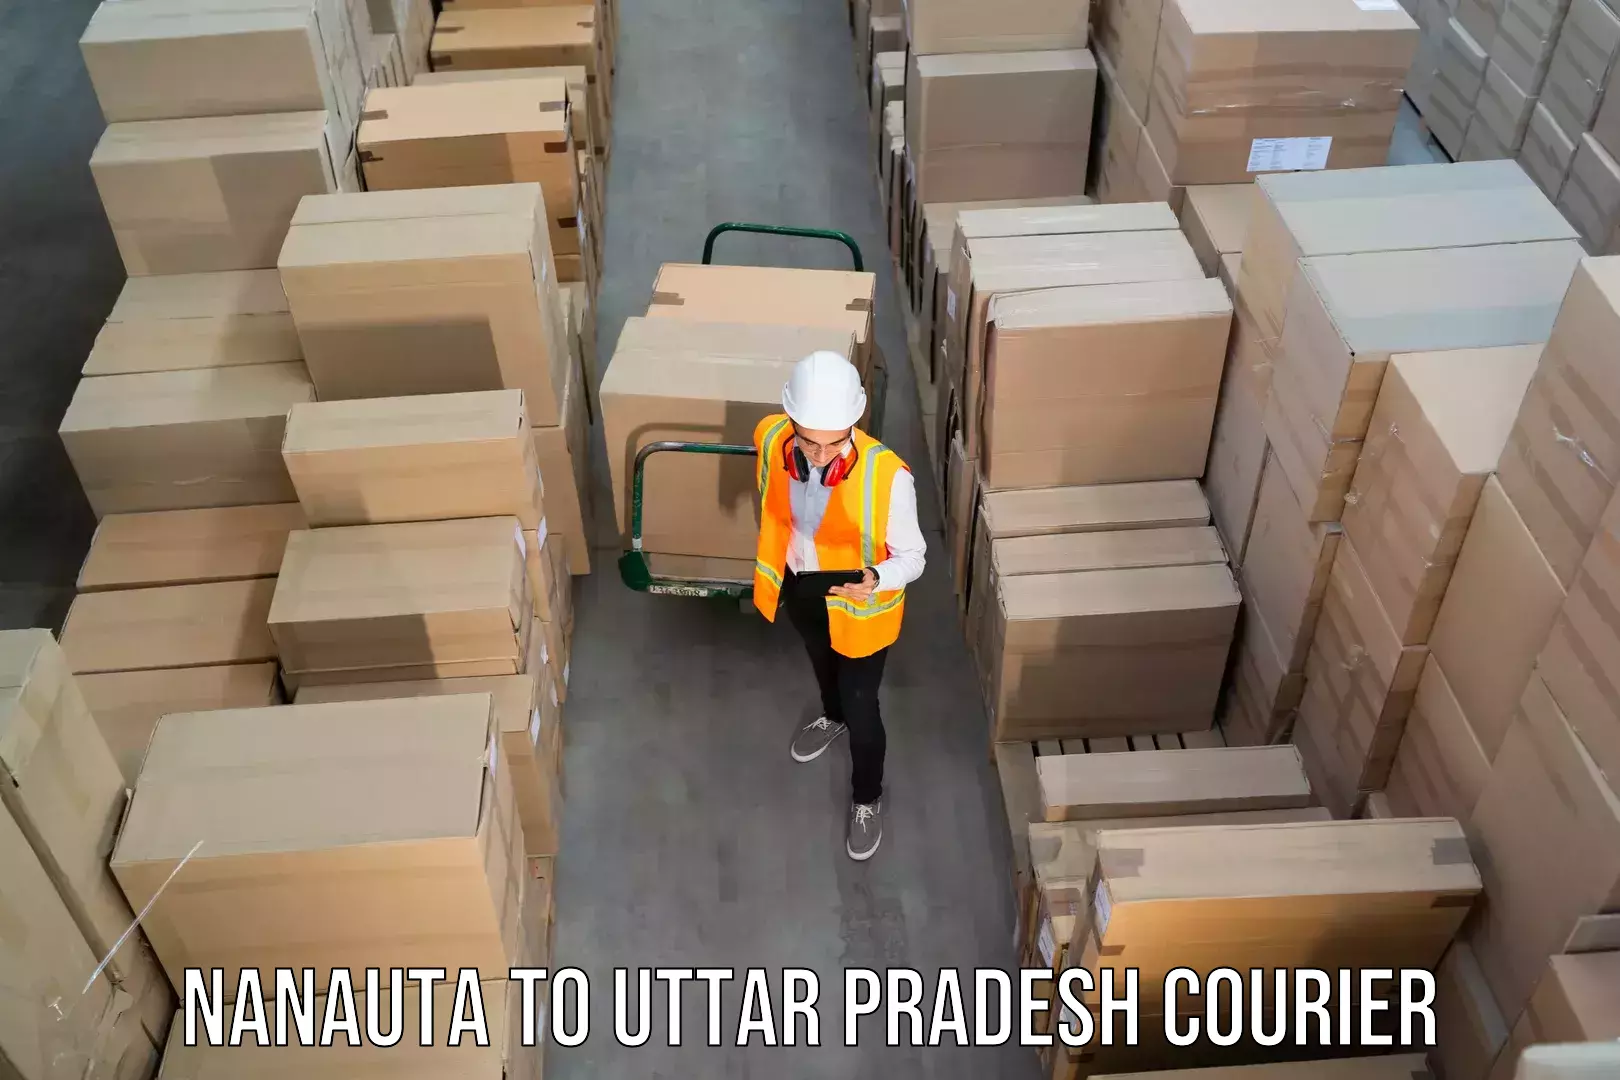 Next-day freight services Nanauta to Budhana